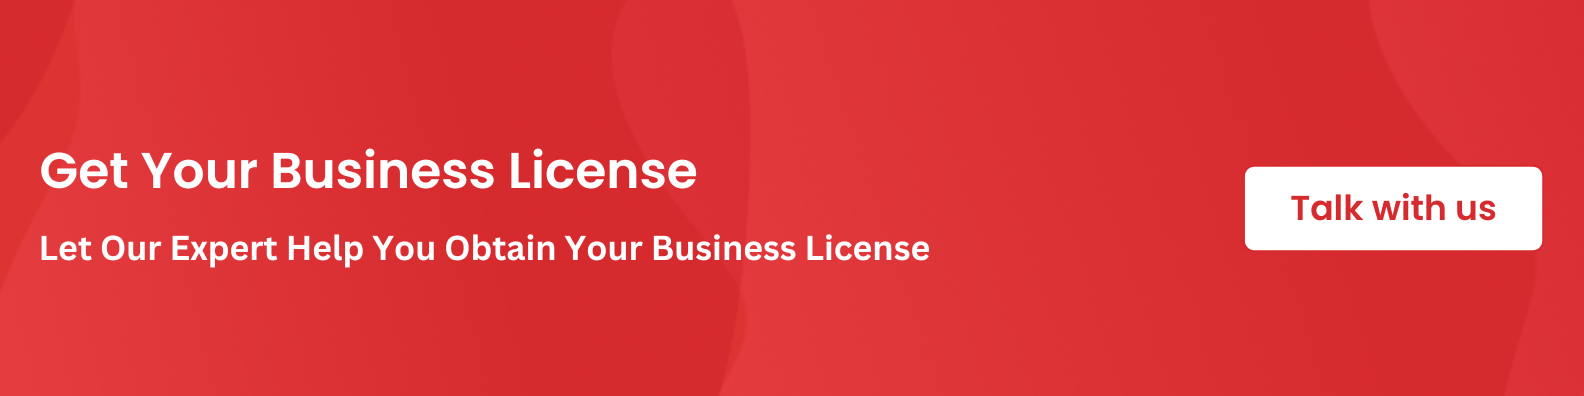 echnical service license in Dubai 